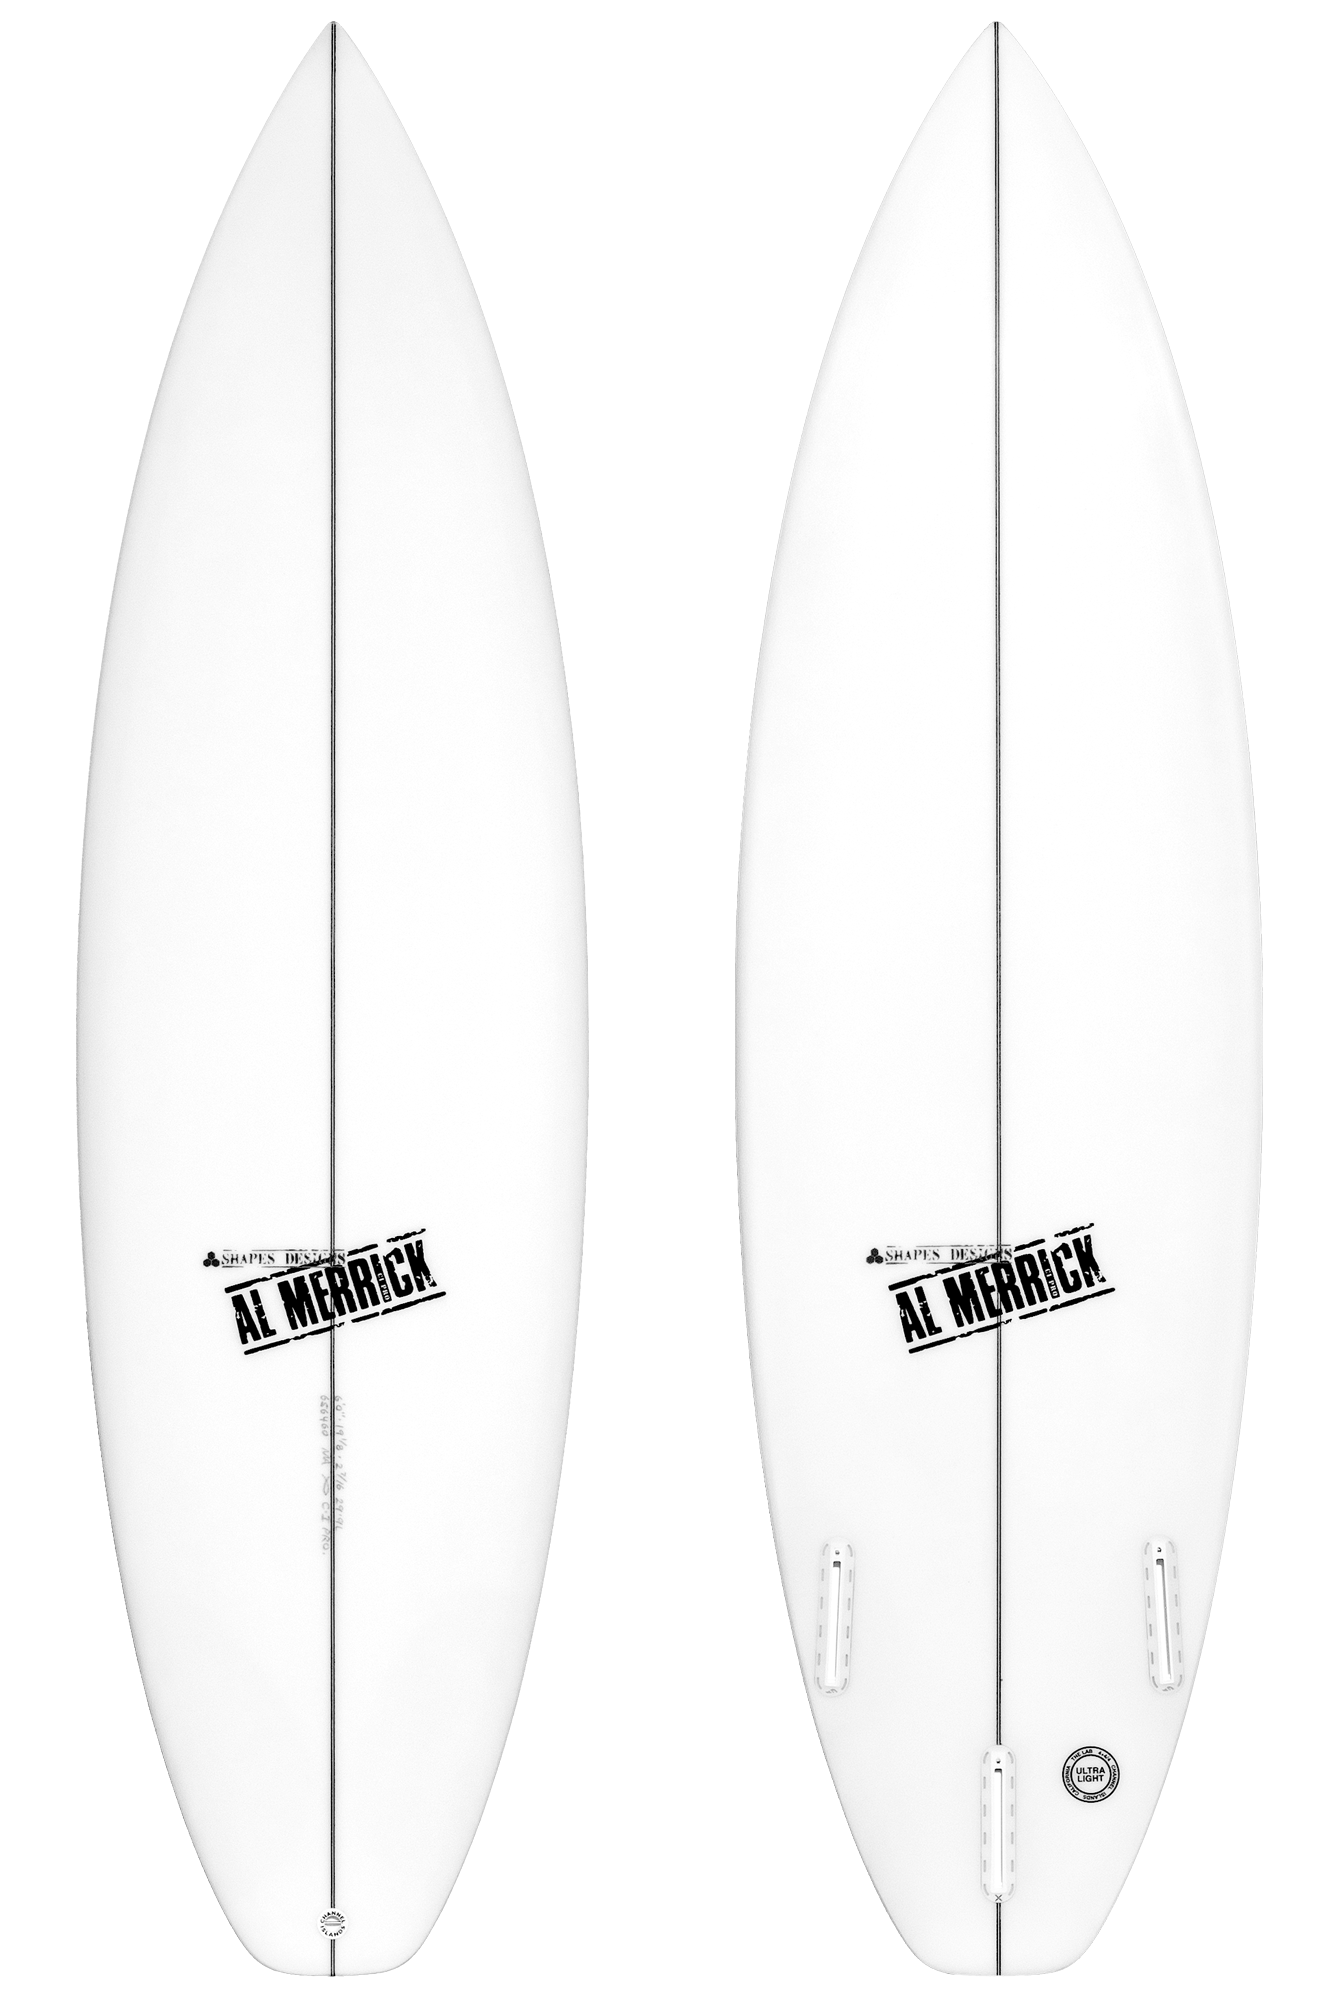 Channel Islands surfboard-